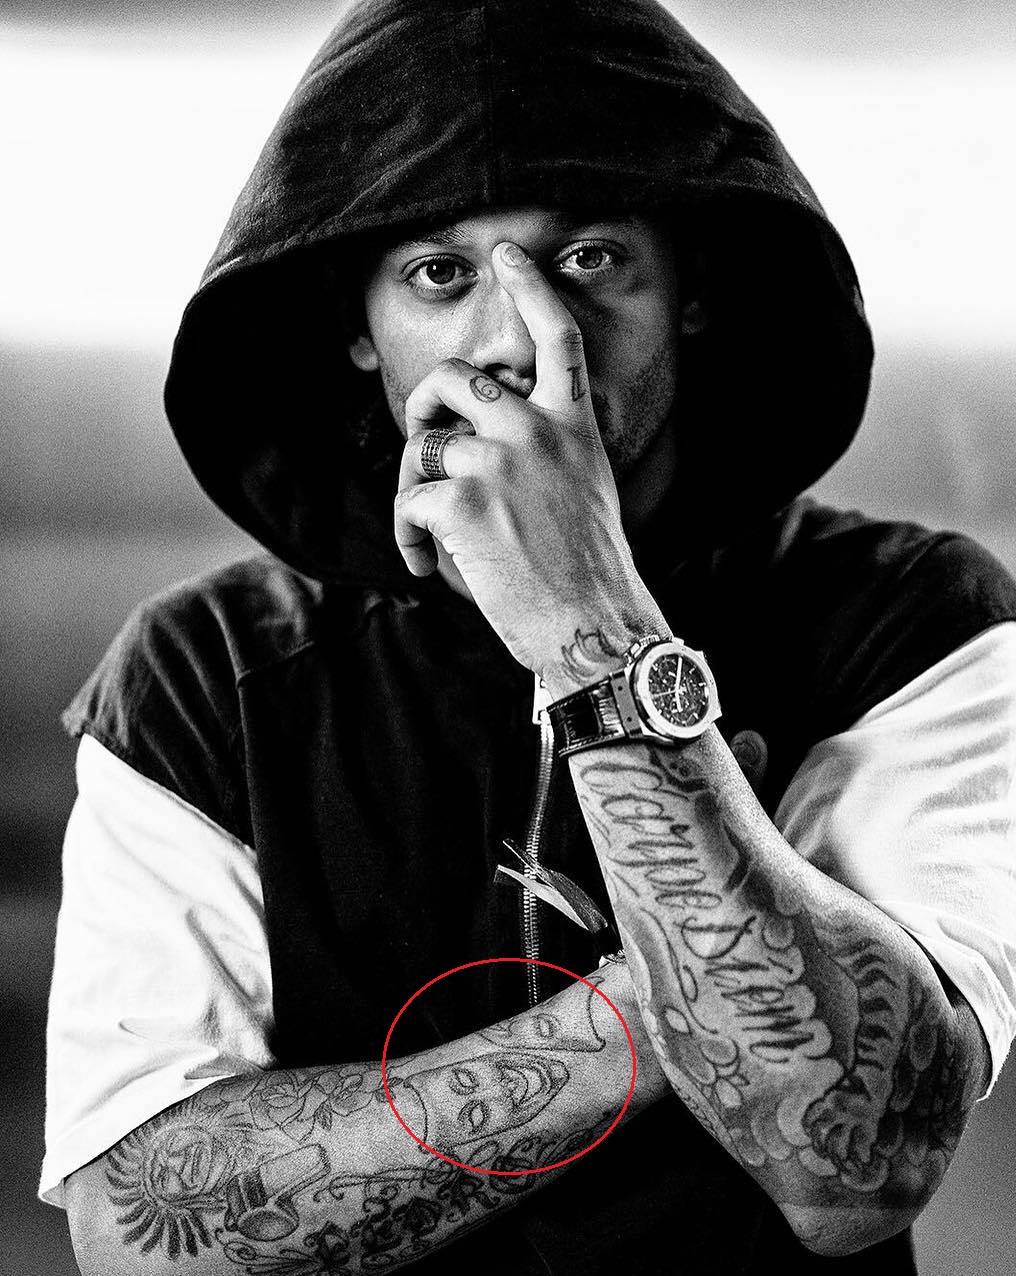 Marcello tattoo yin yang en el antebrazo derecho